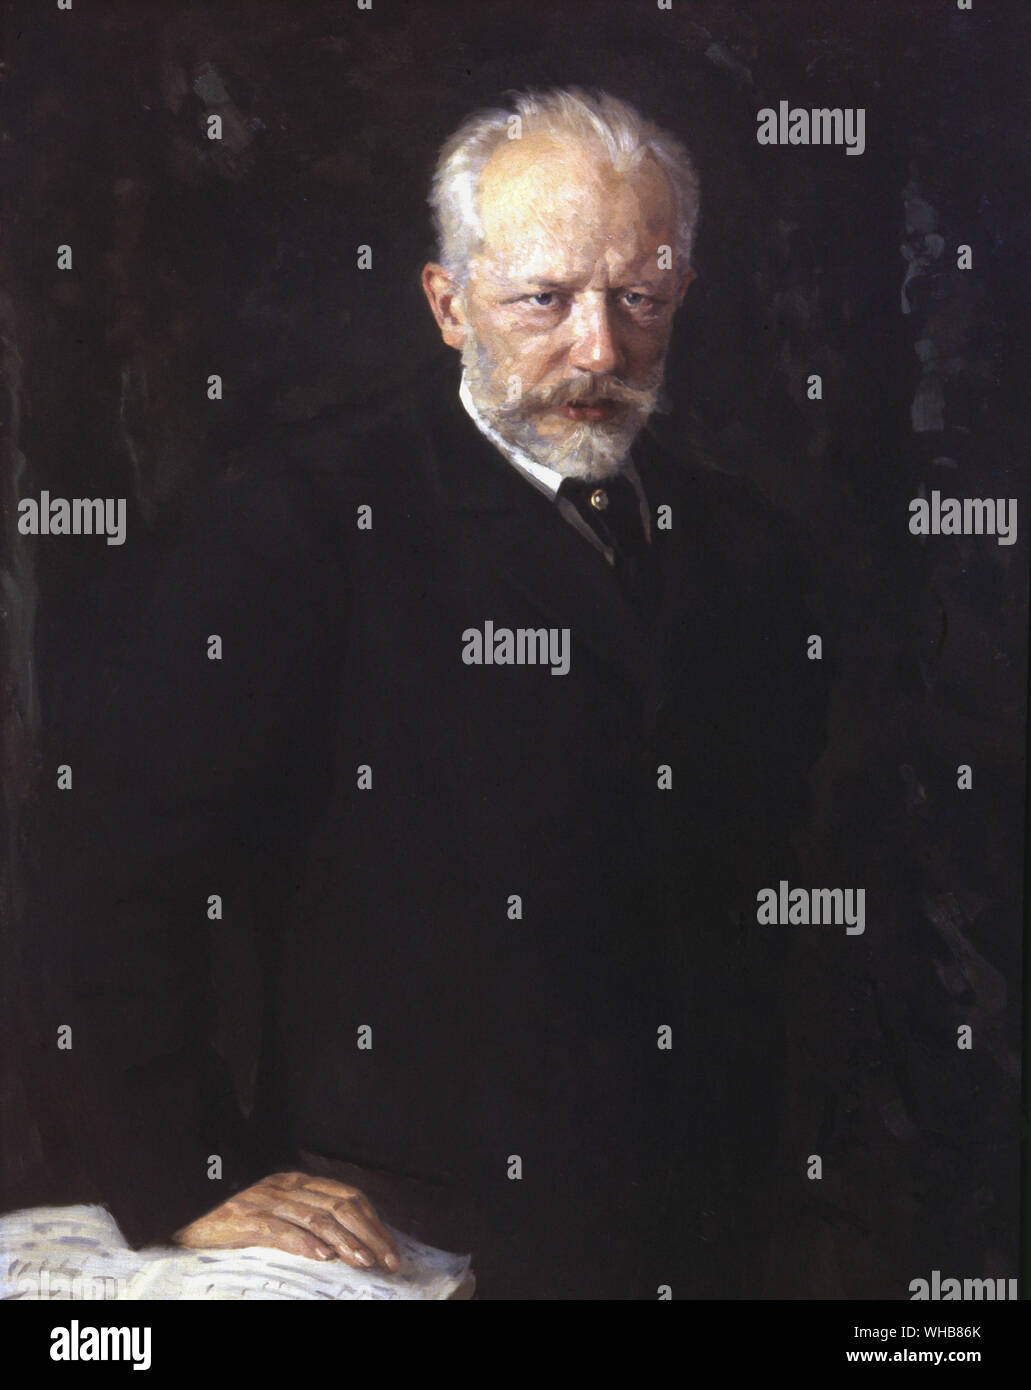 Pjotr Iljitsch Tschaikowski: russischen Komponisten der Romantik. Portrait von Nikolai Dmitrievich Kuznetsov Stockfoto